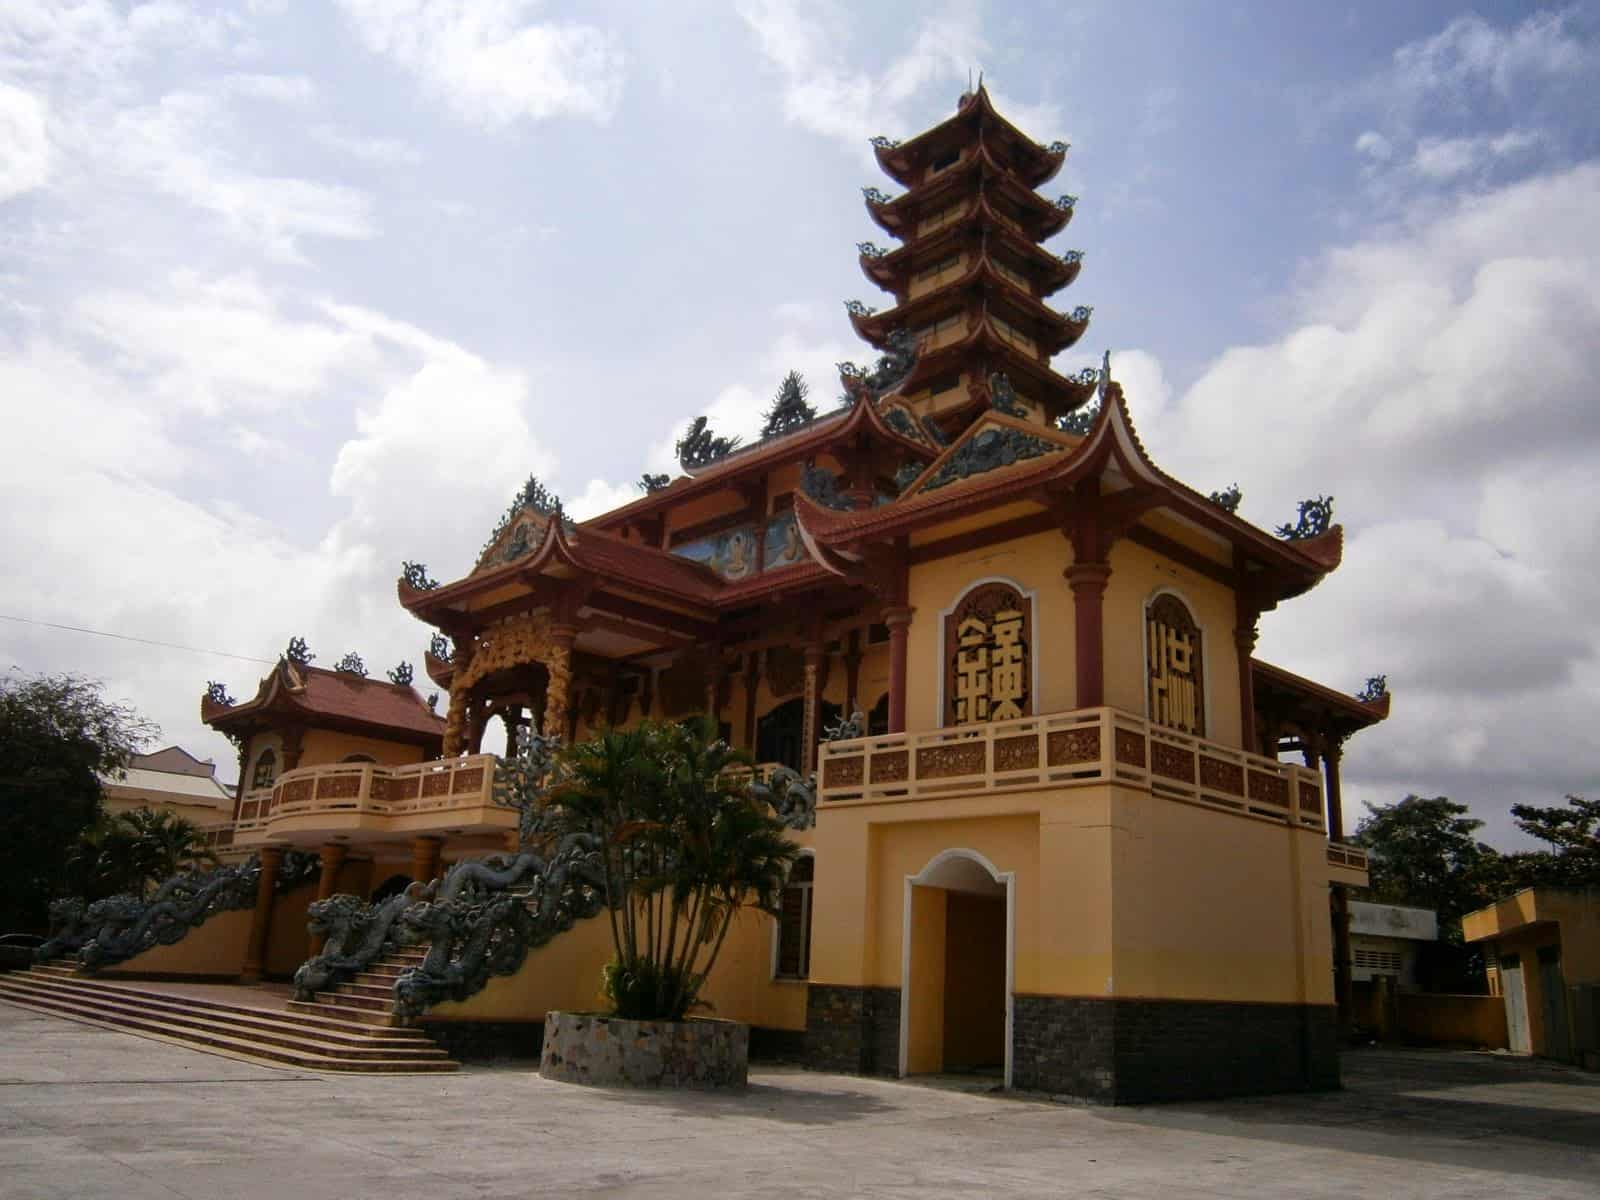 Chùa Long Khánh với niên đại hơn 300 năm ở Quy Nhơn Bình Định